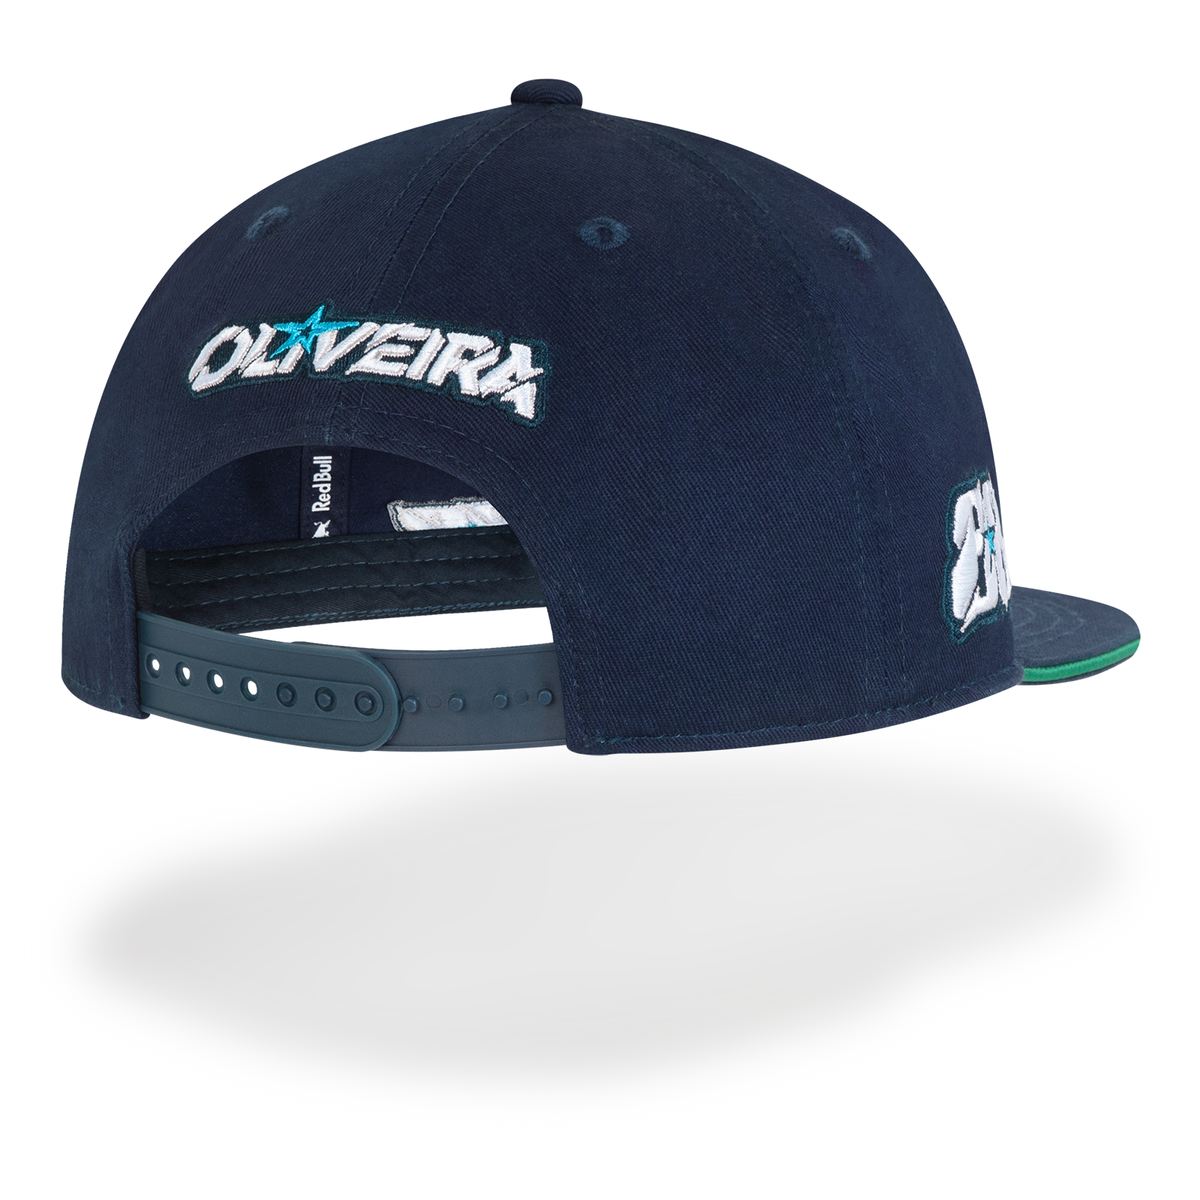 MIGUEL OLIVEIRA FLAT CAP